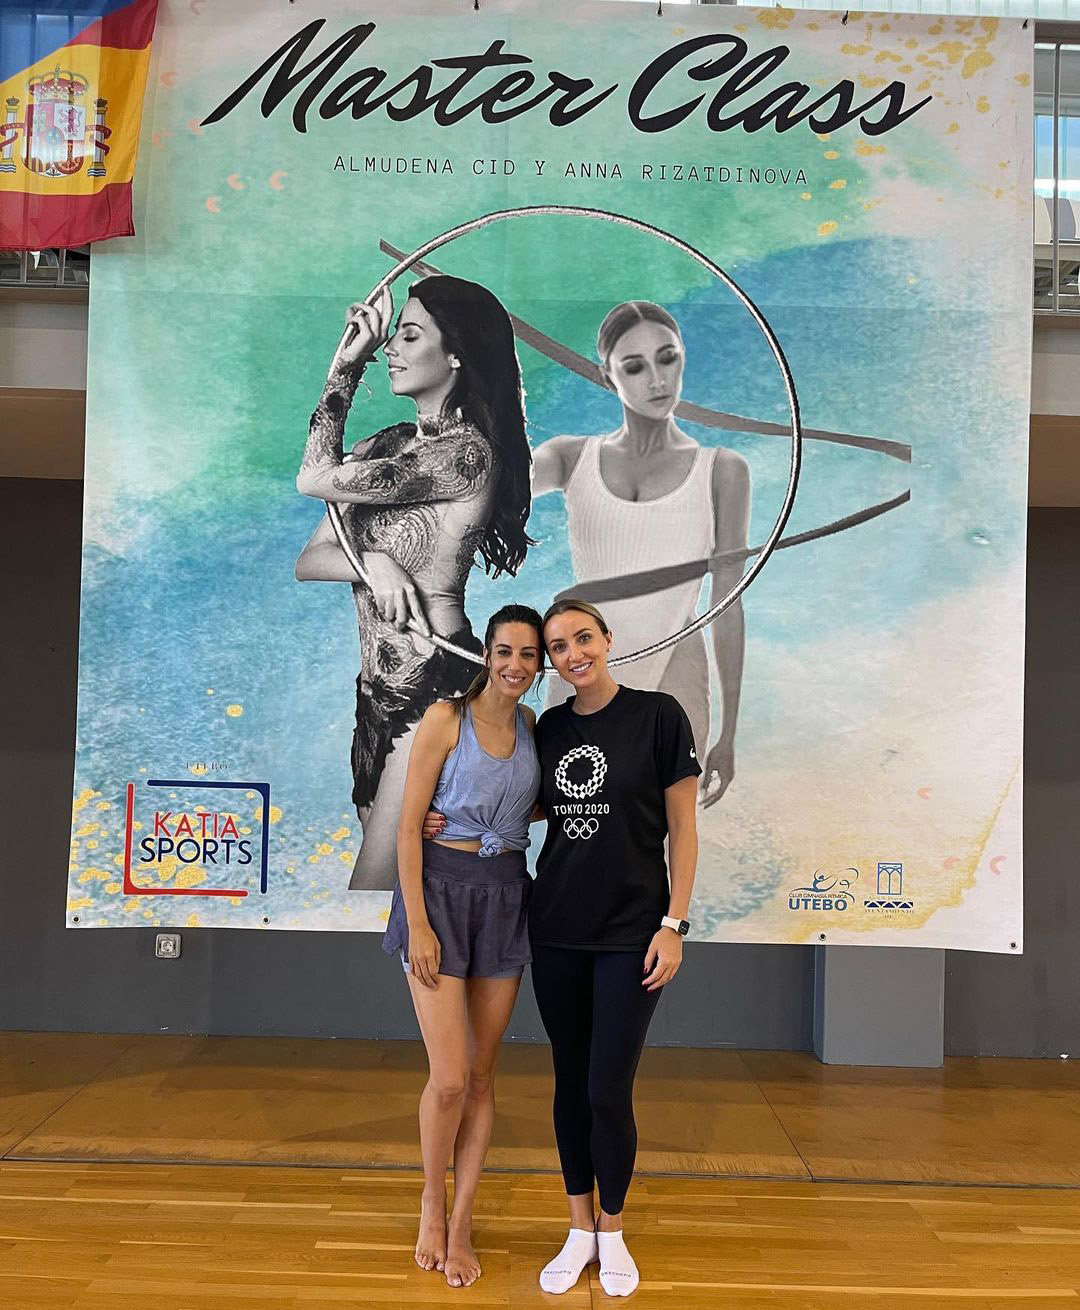 С испанской гимнасткой Альмуденой Сид Аня проводила и тренировки для детей, и благотворительные мероприятия. Фото: Instagram.com/anna_rizatdinova/